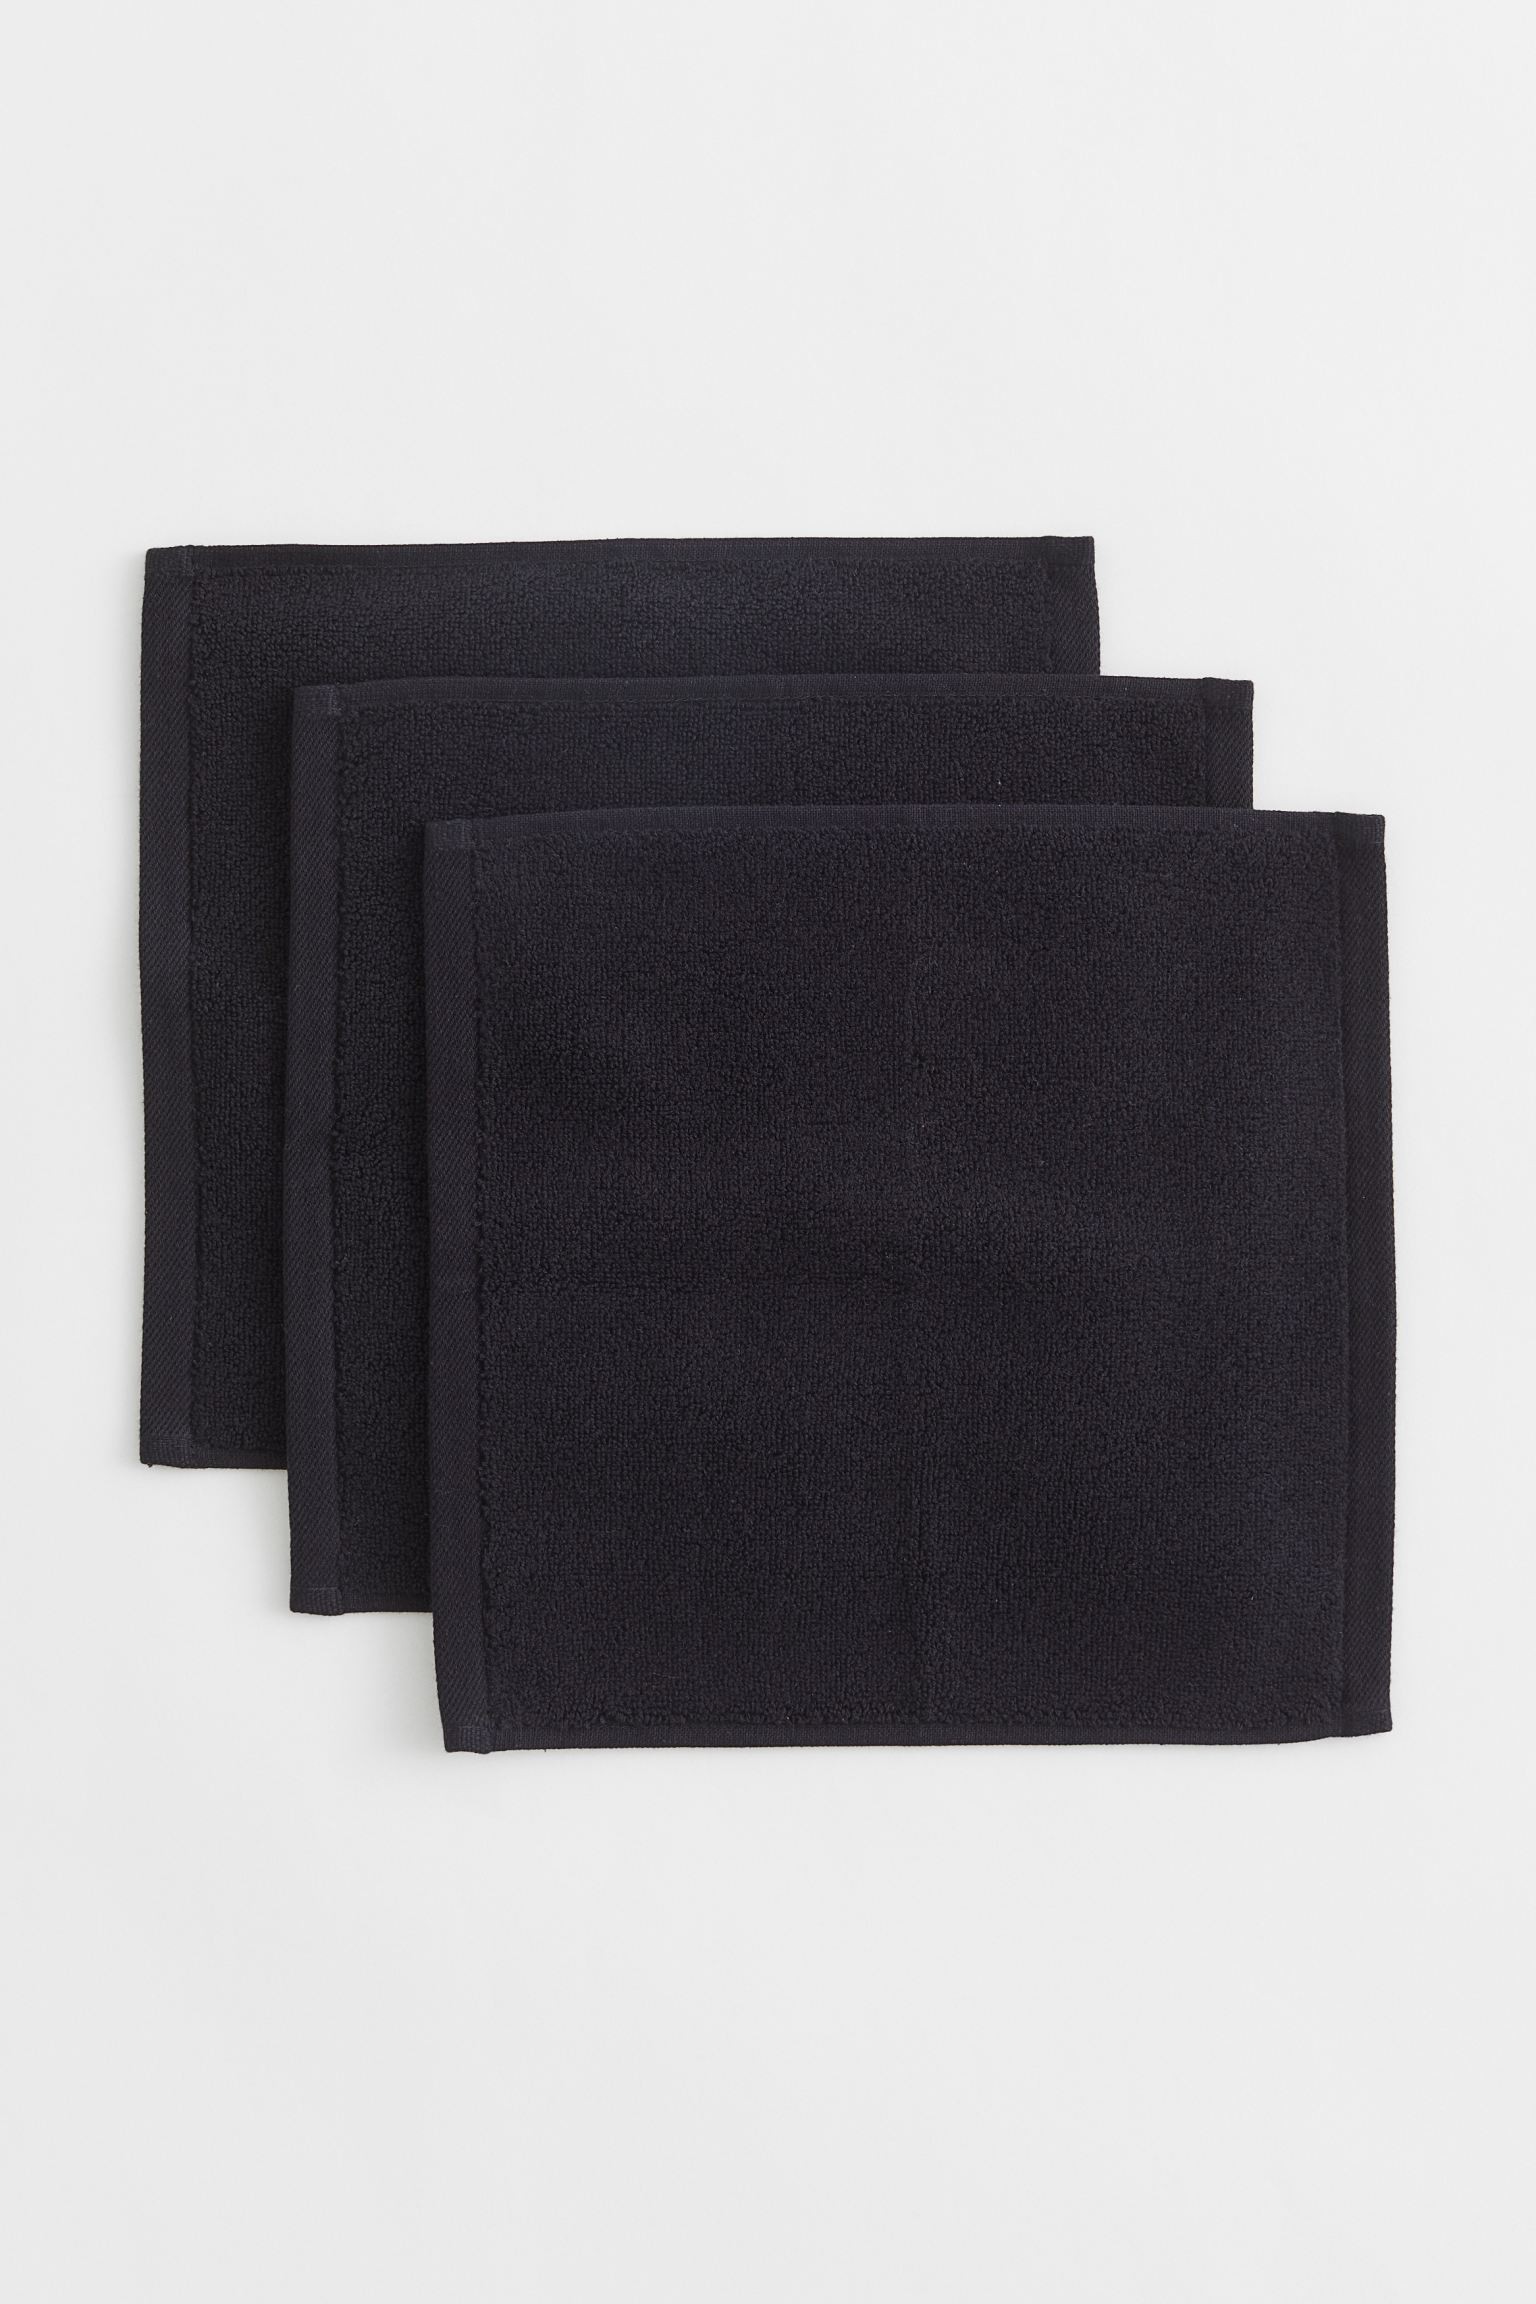 H&M Home Махровое полотенце для лица, 3 шт., Черный, 30x30 1074991002 | 1074991002